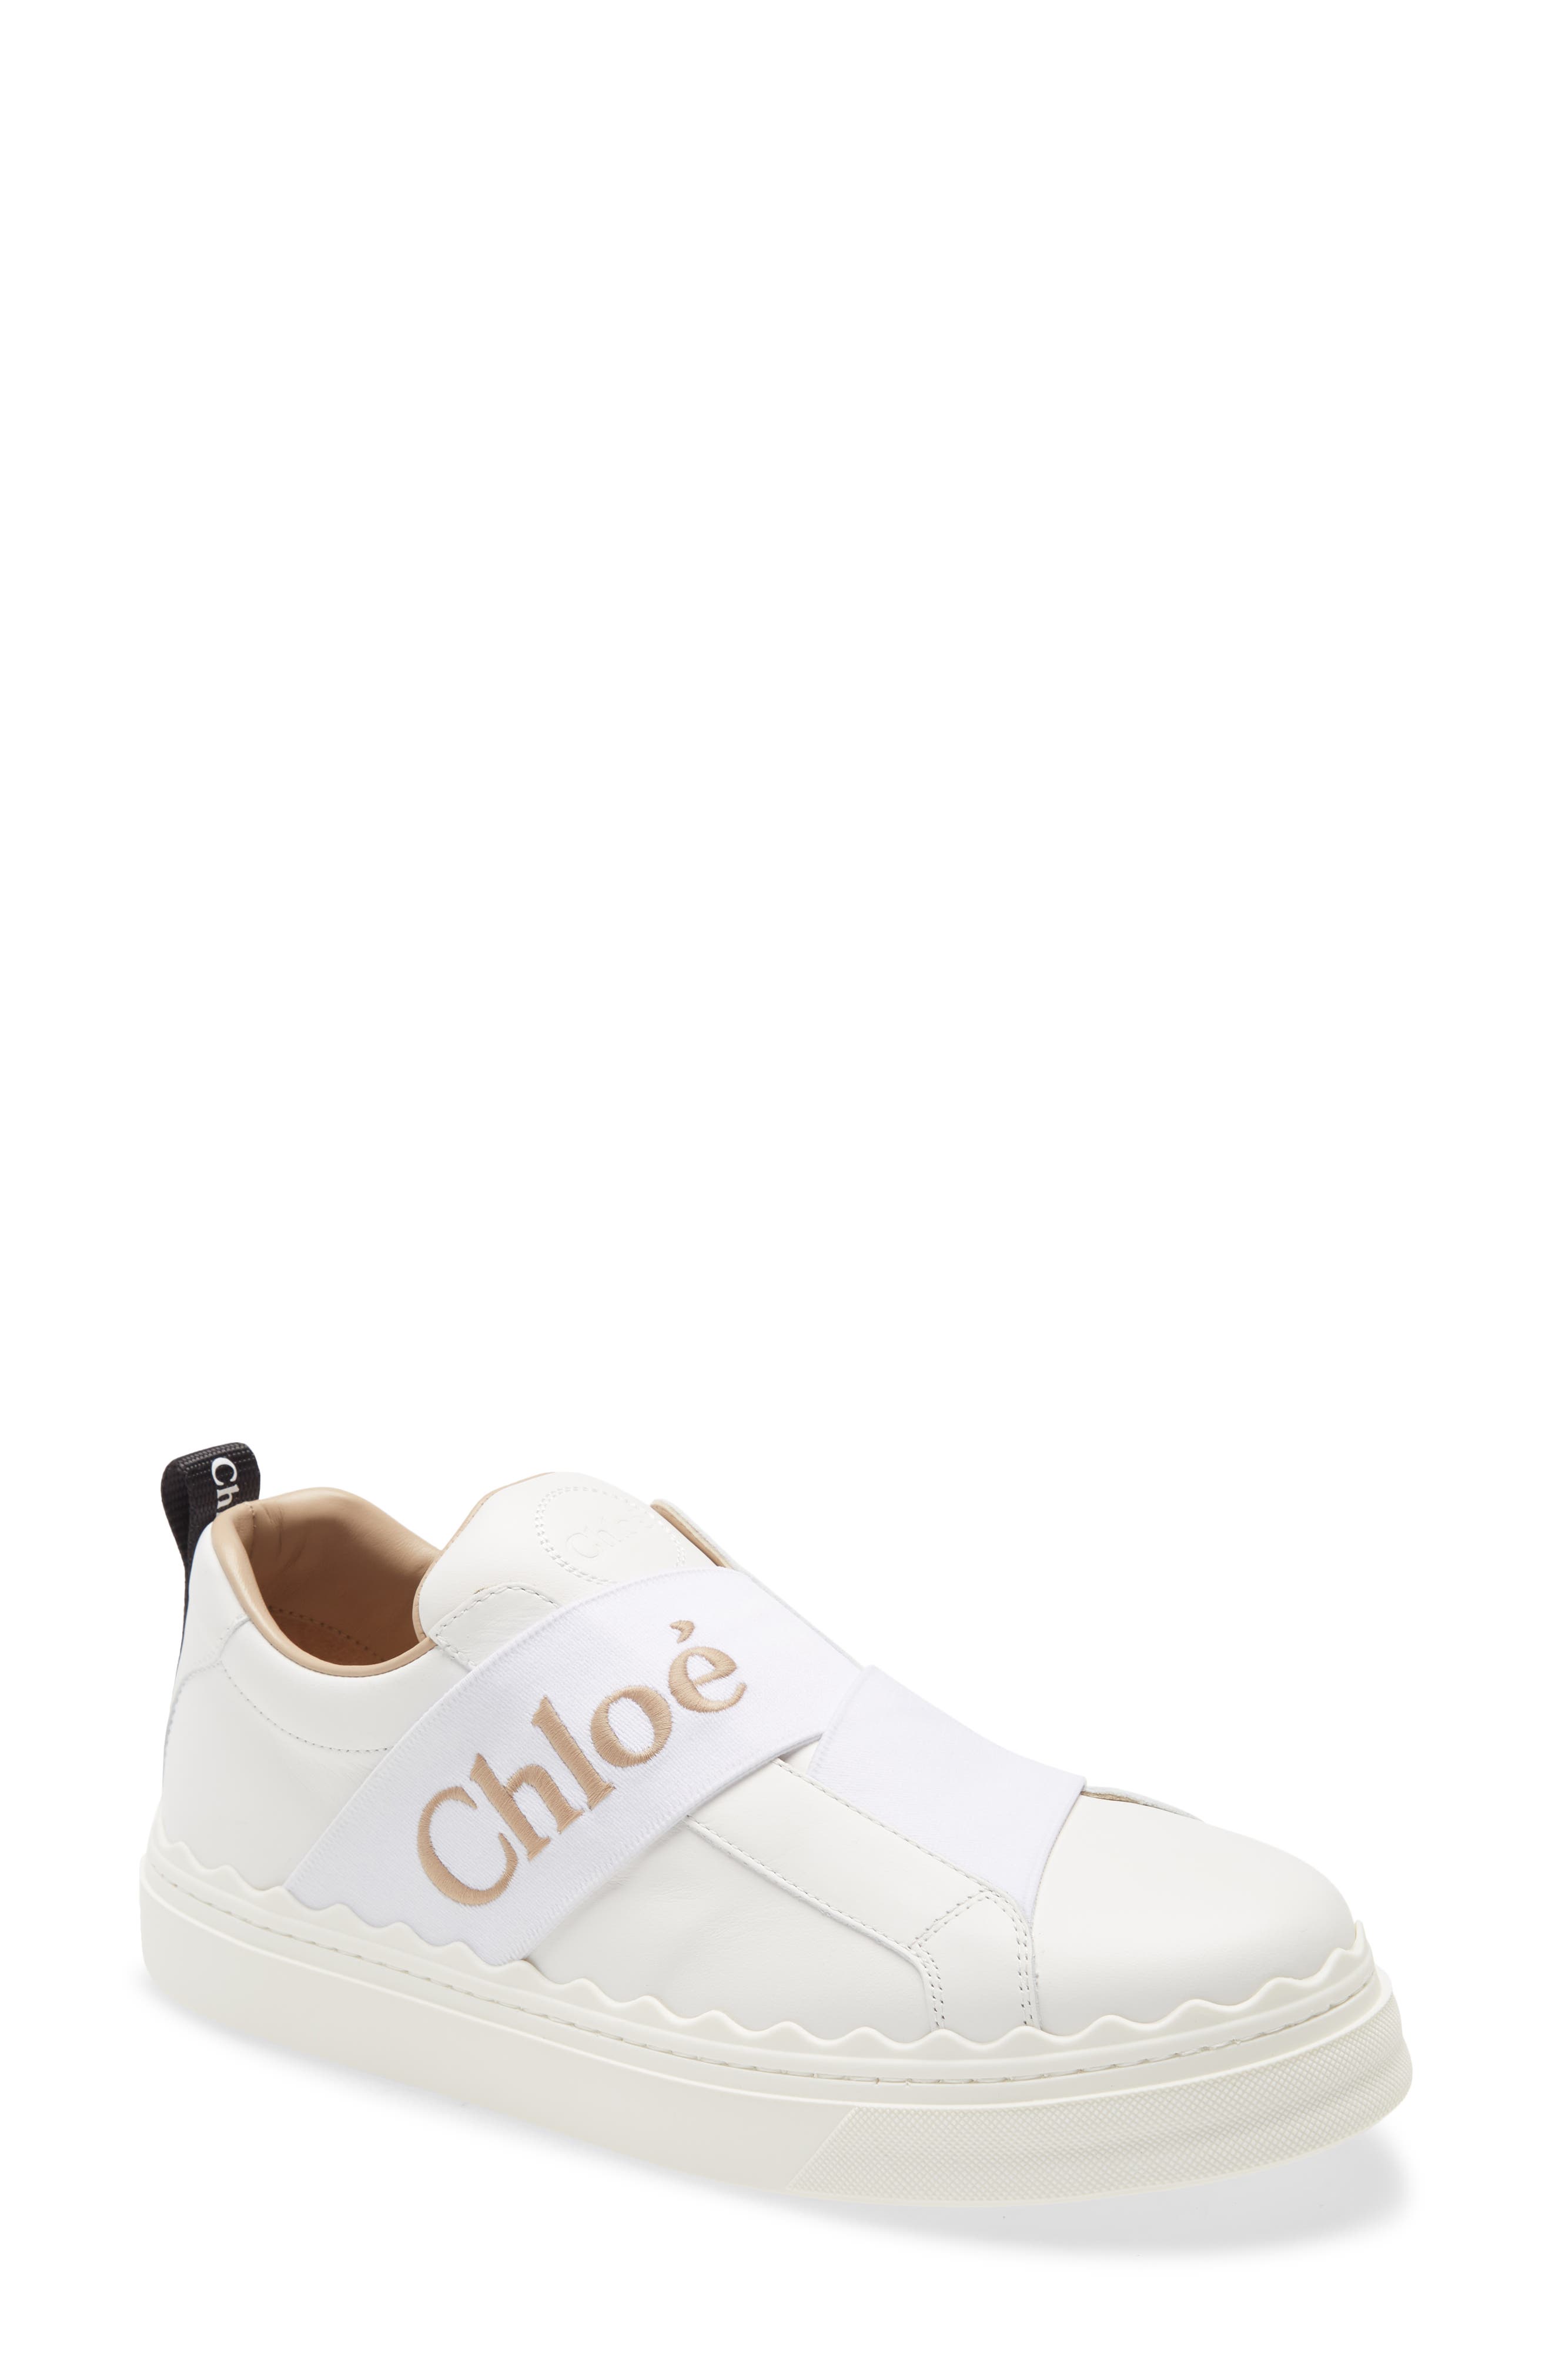 chloe sneakers sale